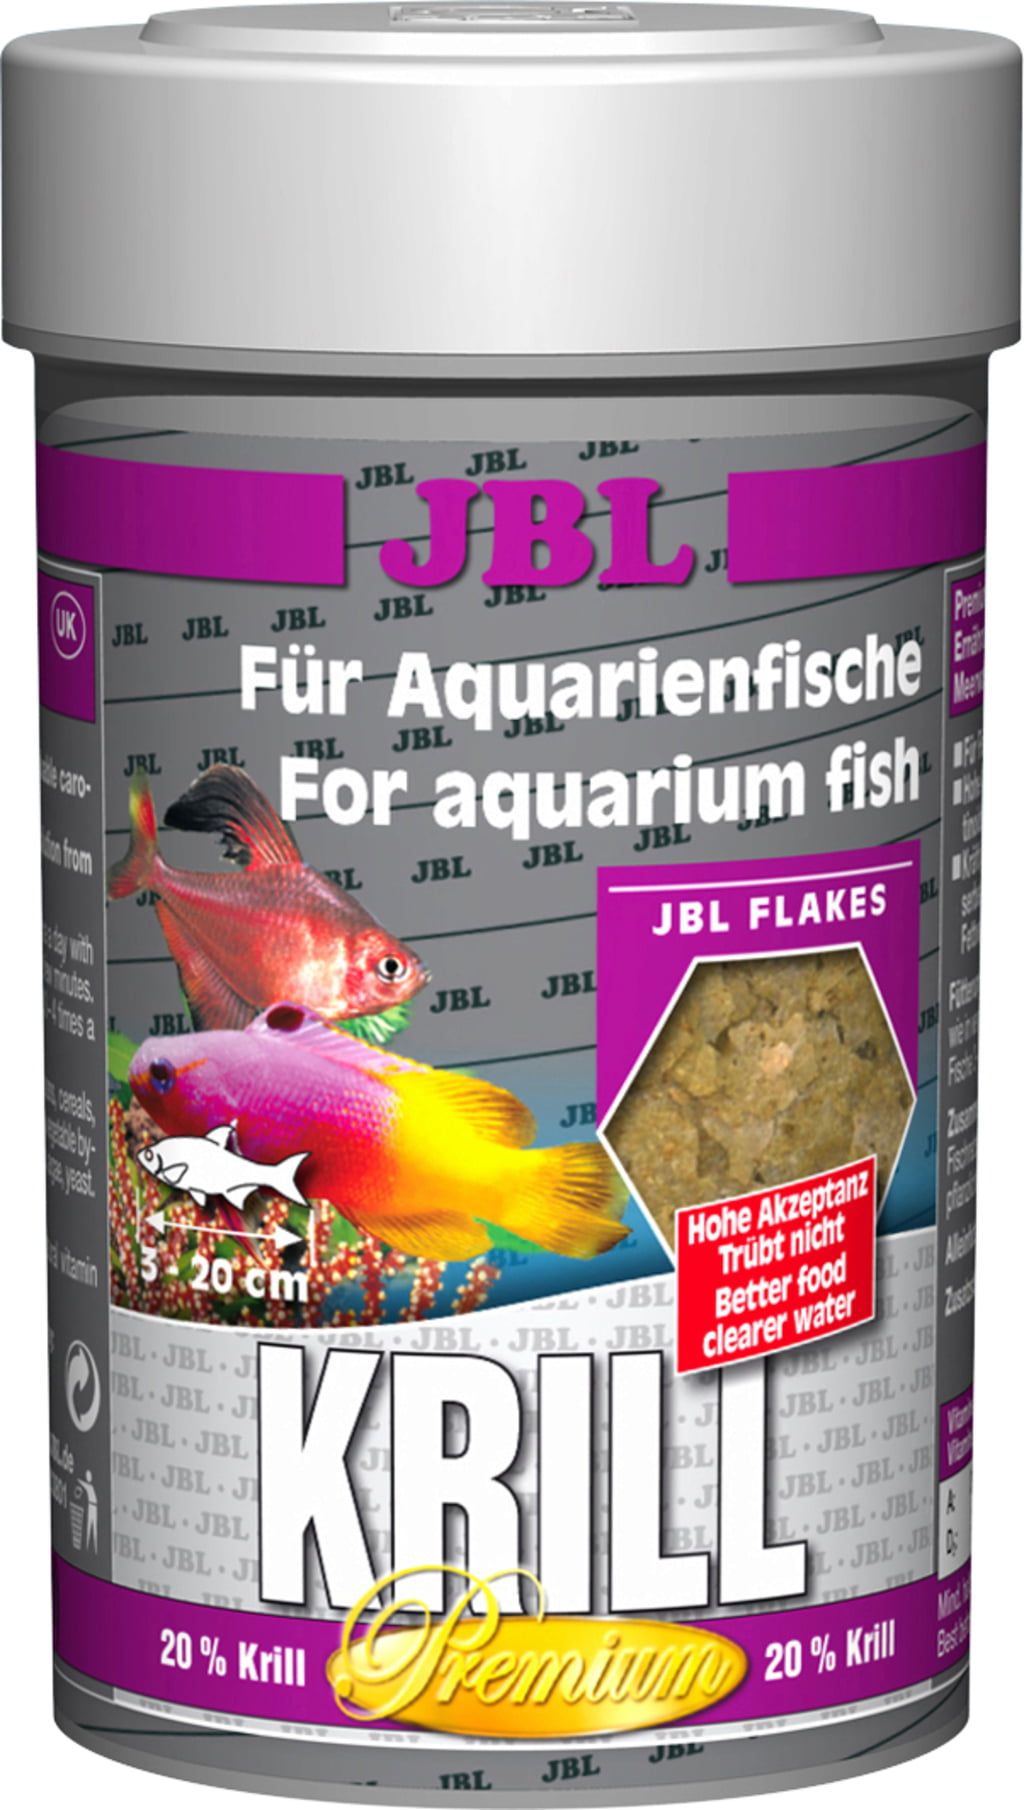 JBL Krill - Olibetta Online Shop